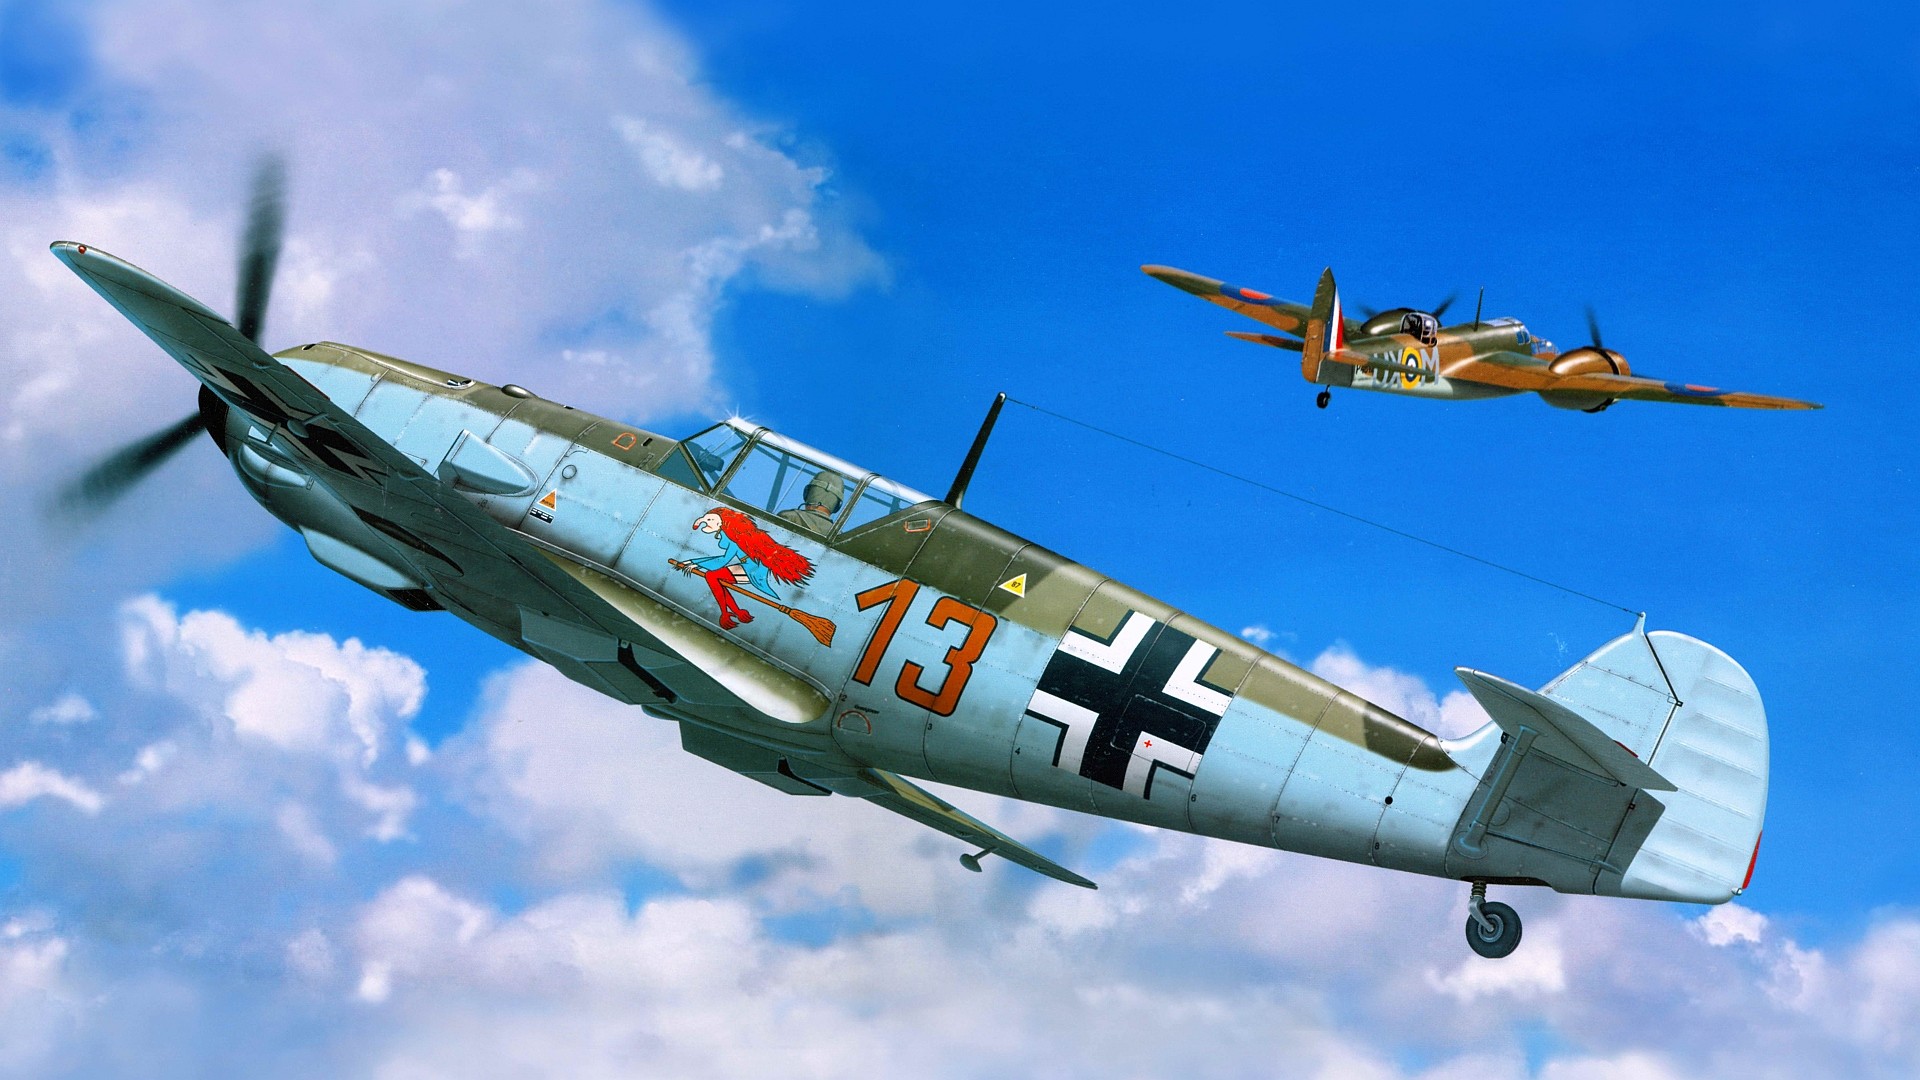 Messerschmitt, Messerschmitt Bf 109, Luftwaffe, Artwork, Military Aircraft, World War II, Germany Wallpaper